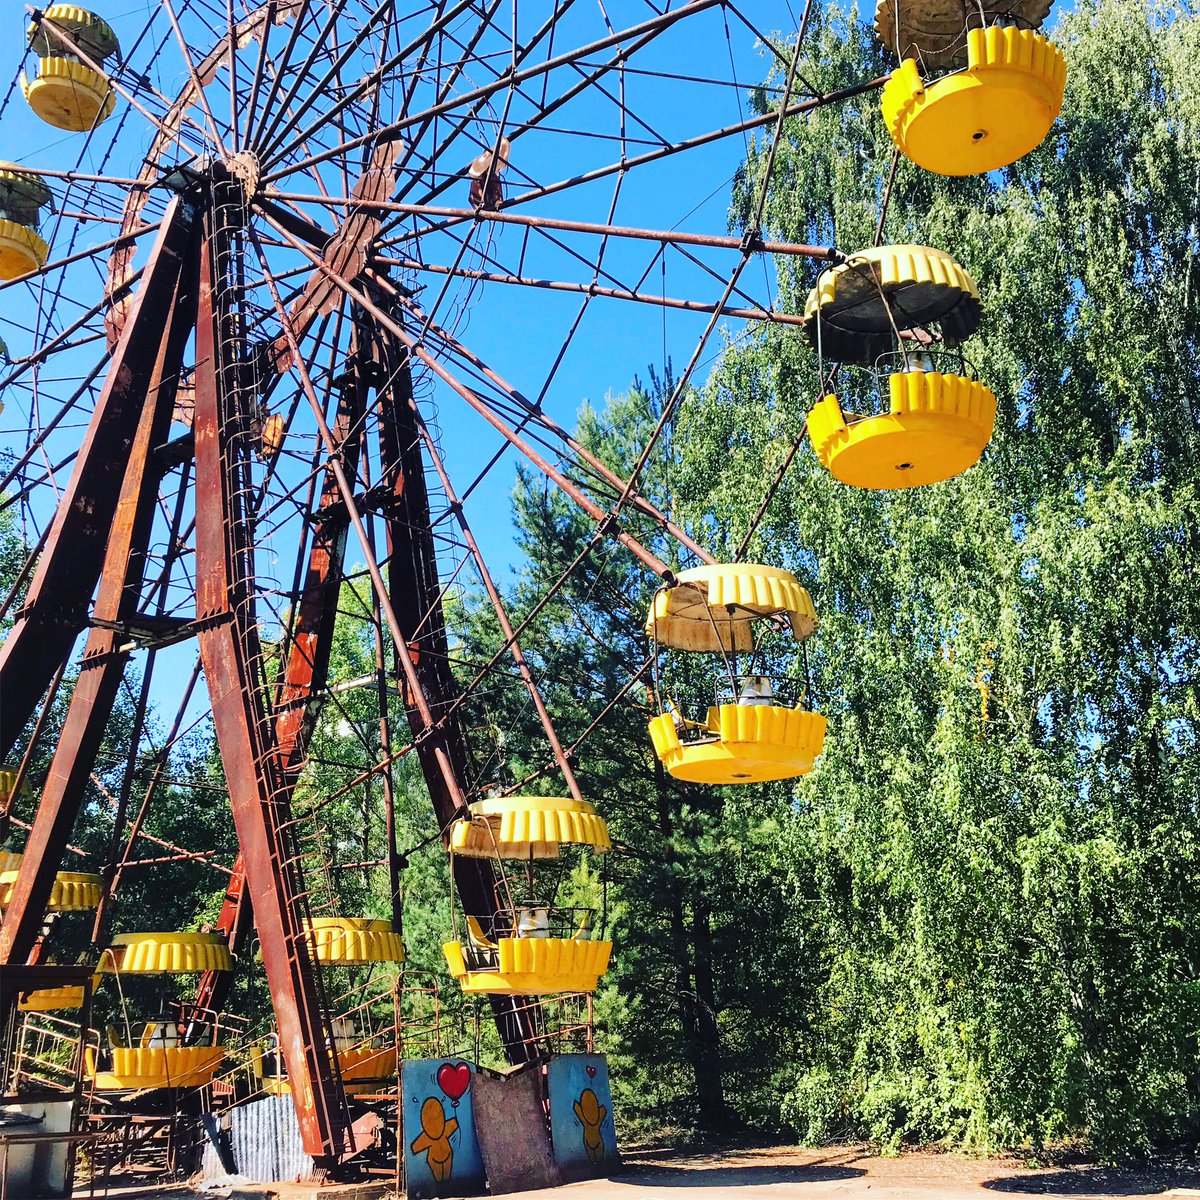 Et l’on débouche sur le parc d’attraction qui n’a jamais ouvert ses portes puisqu’il devait ouvrir environ une semaine après l’explosion.  #Tchernobyl  (Plus de photos:  http://Instagram.com/nashtagstagram )